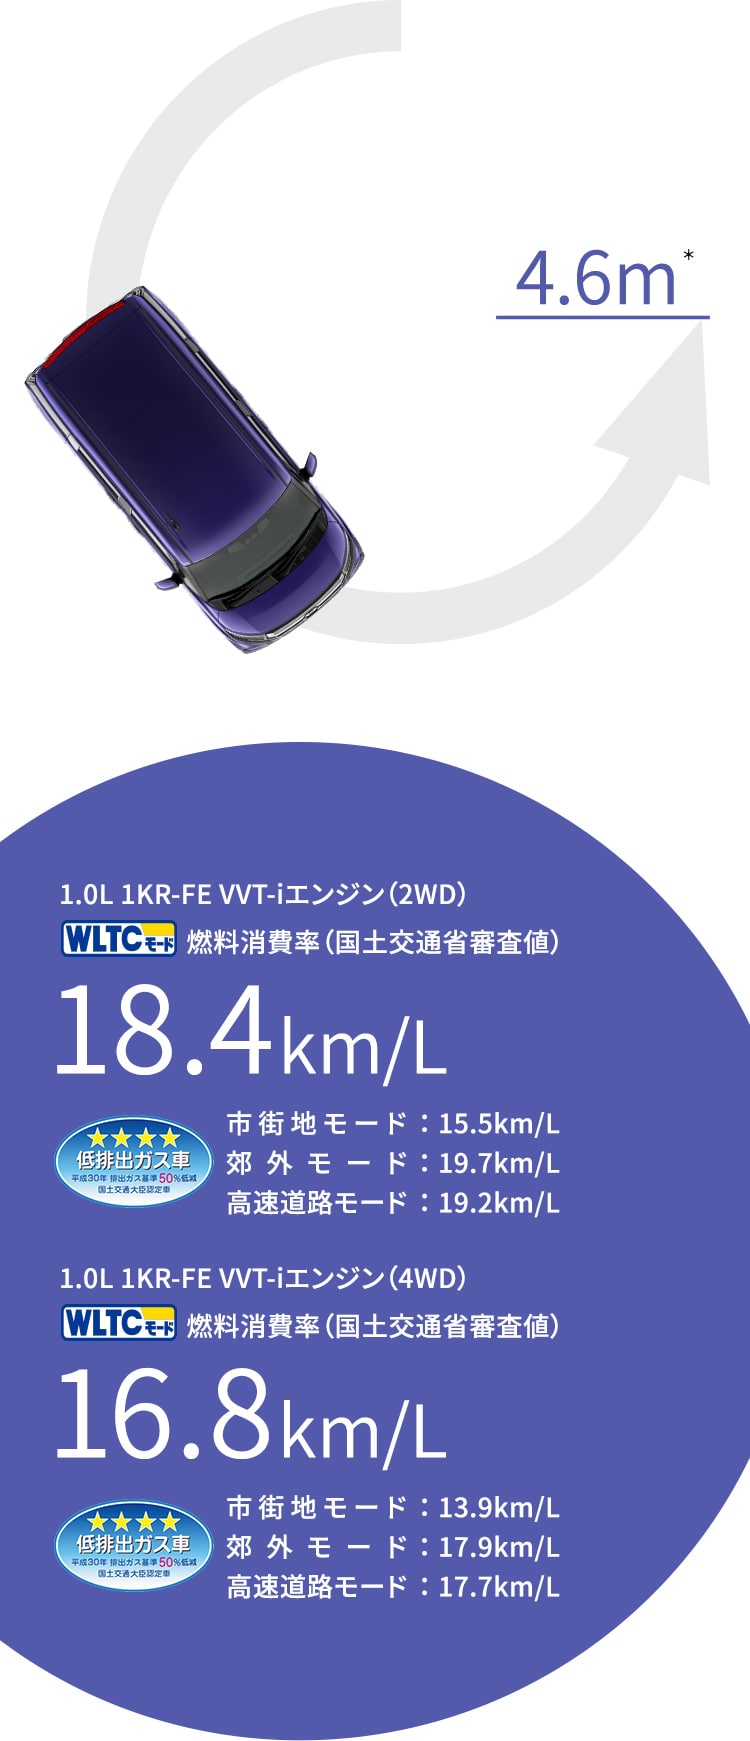 1.0L 1KR-FE VVT-iエンジン（2WD） WLTCモード燃料消費率（国土交通省審査値） 18.4km/L 市街地：モード15.5km/L 郊外モード：19.7km/L 高速道路モード：19.2km/L 1.0L 1KR-FE VVT-iエンジン（4WD） WLTCモード燃料消費率（国土交通省審査値） 16.8km/L 市街地：モード13.9km/L 郊外モード：17.9km/L 高速道路モード：17.7km/L